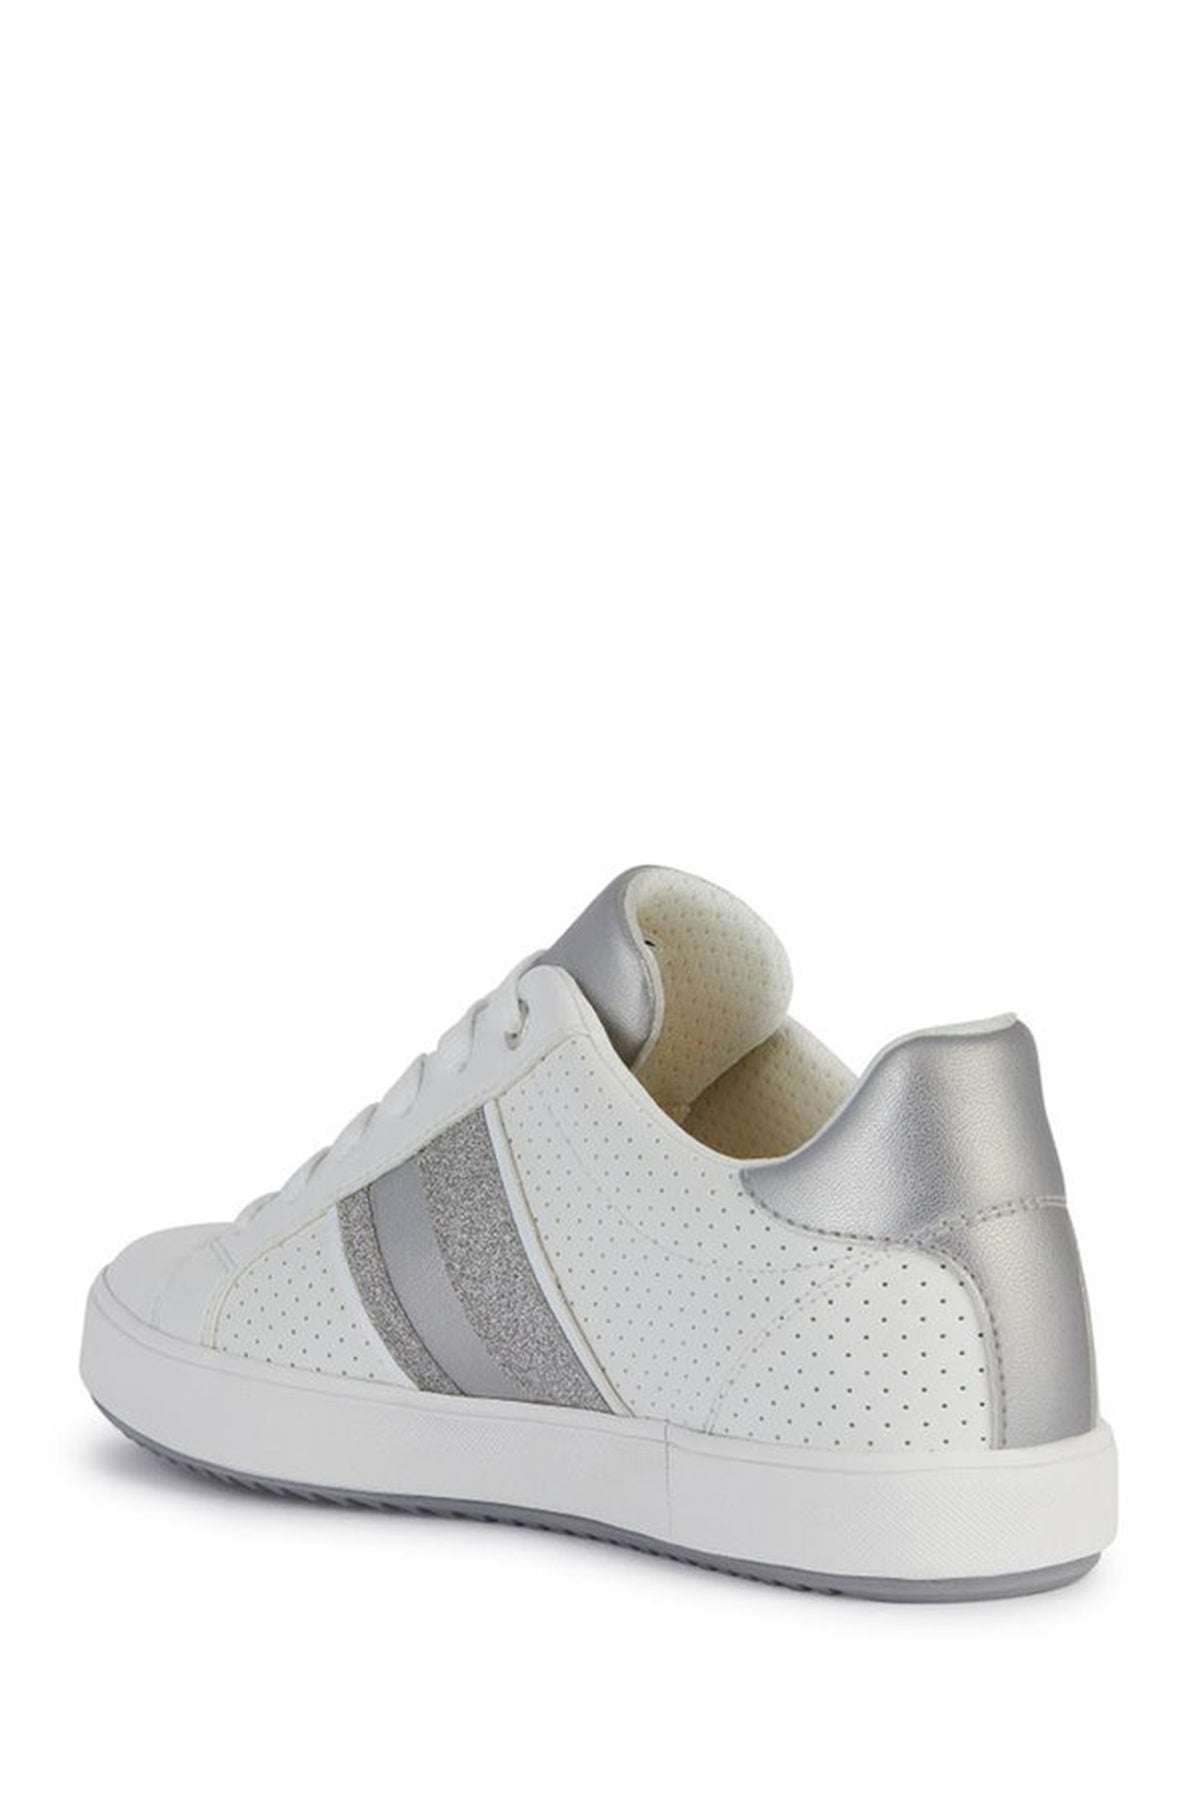 Geox Kadın Beyaz Blomiee Bağcıklı Deri Sneaker